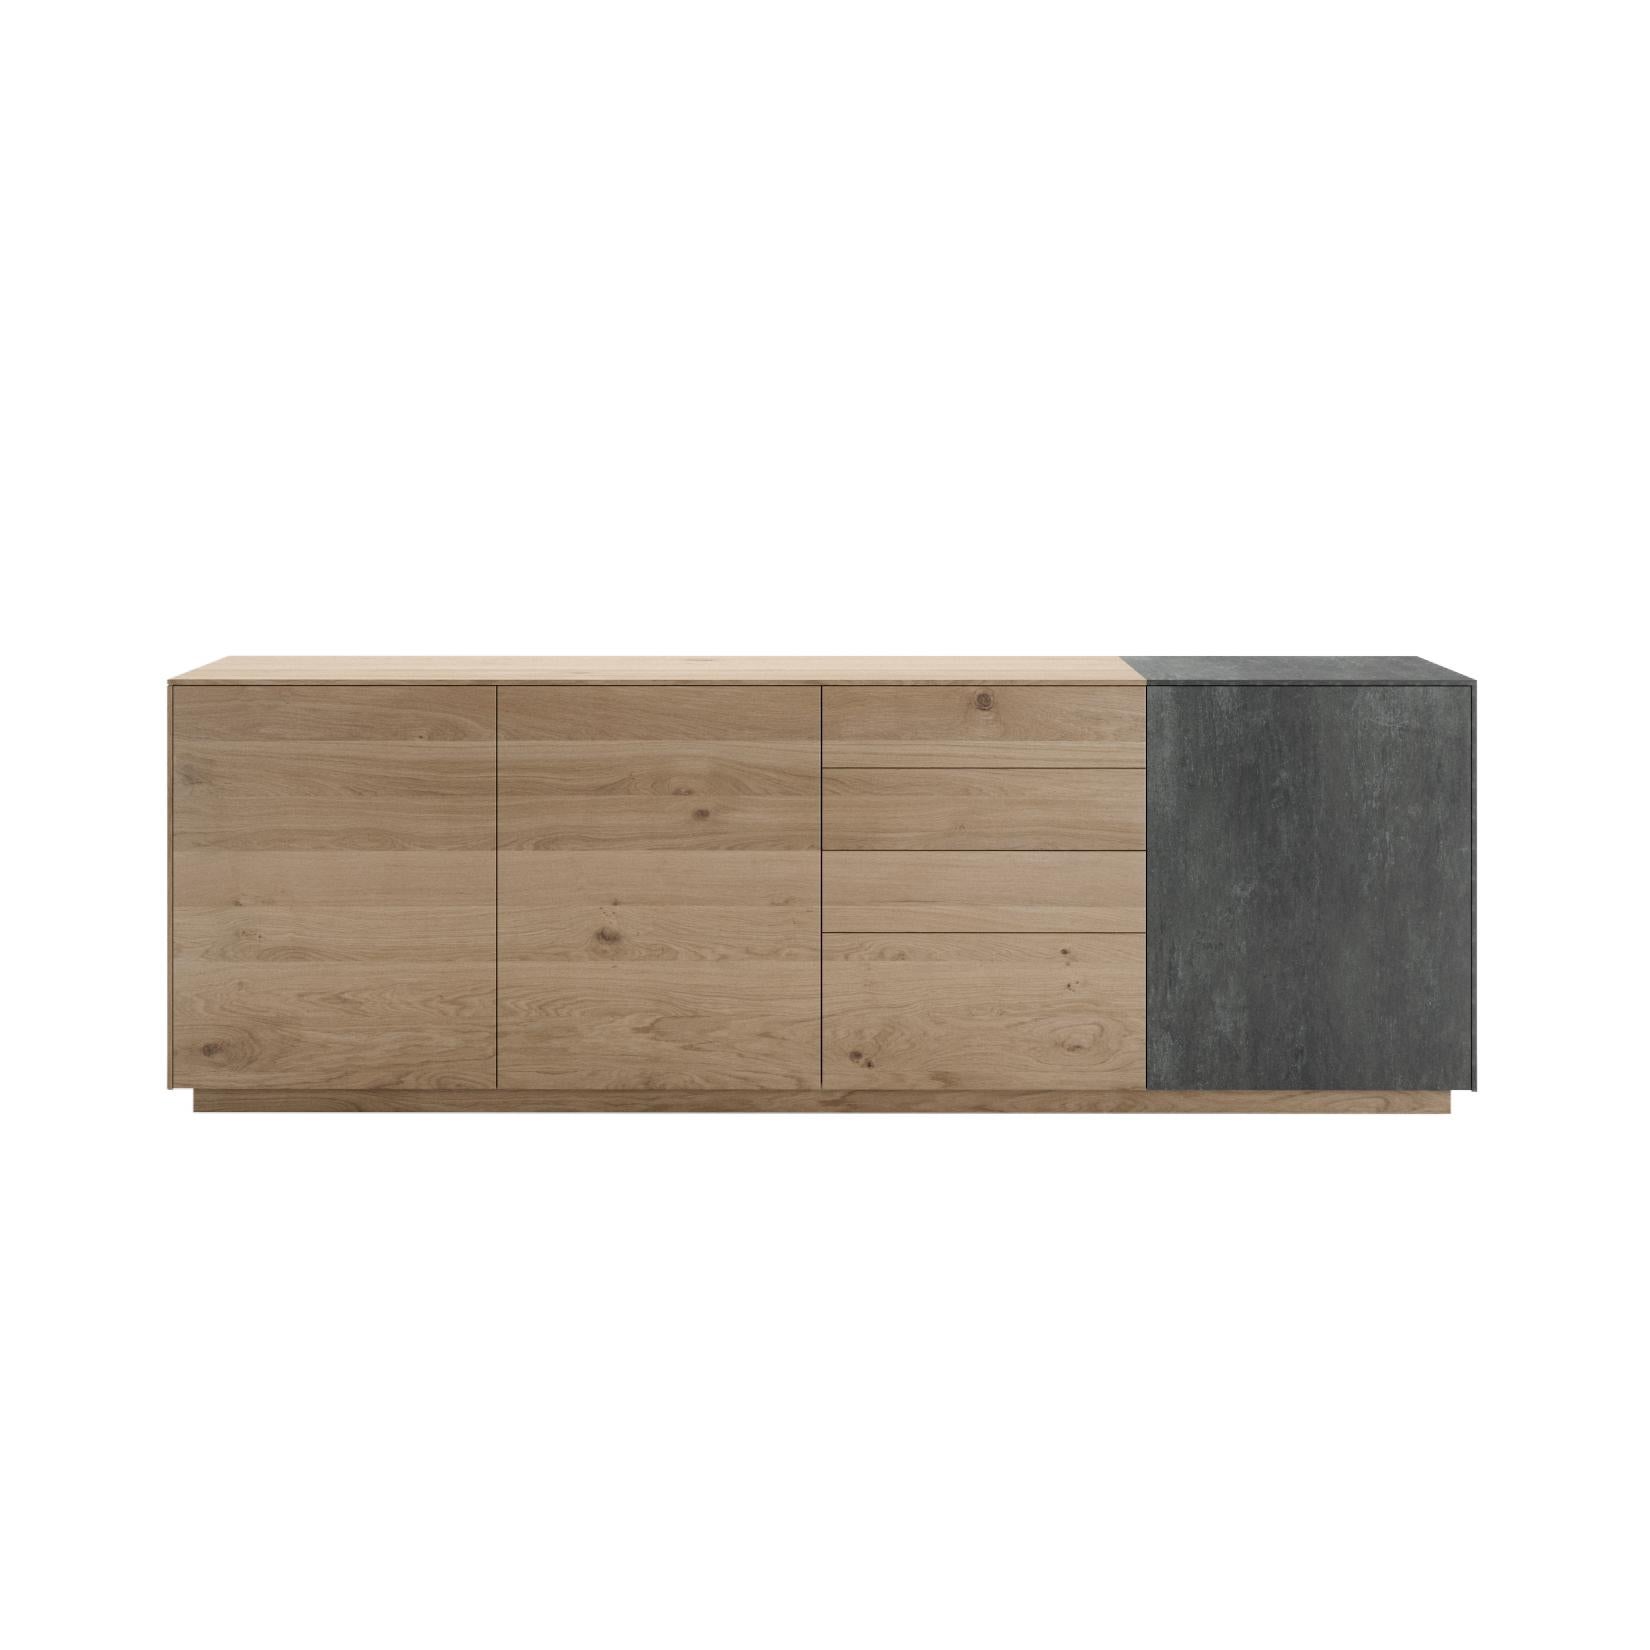 La collection Lounge est disponible en deux qualités de bois de chêne et peut être combinée avec deux références céramiques différentes. Cette collection est hautement personnalisable et pourrait également incorporer des détails en verre bronze et